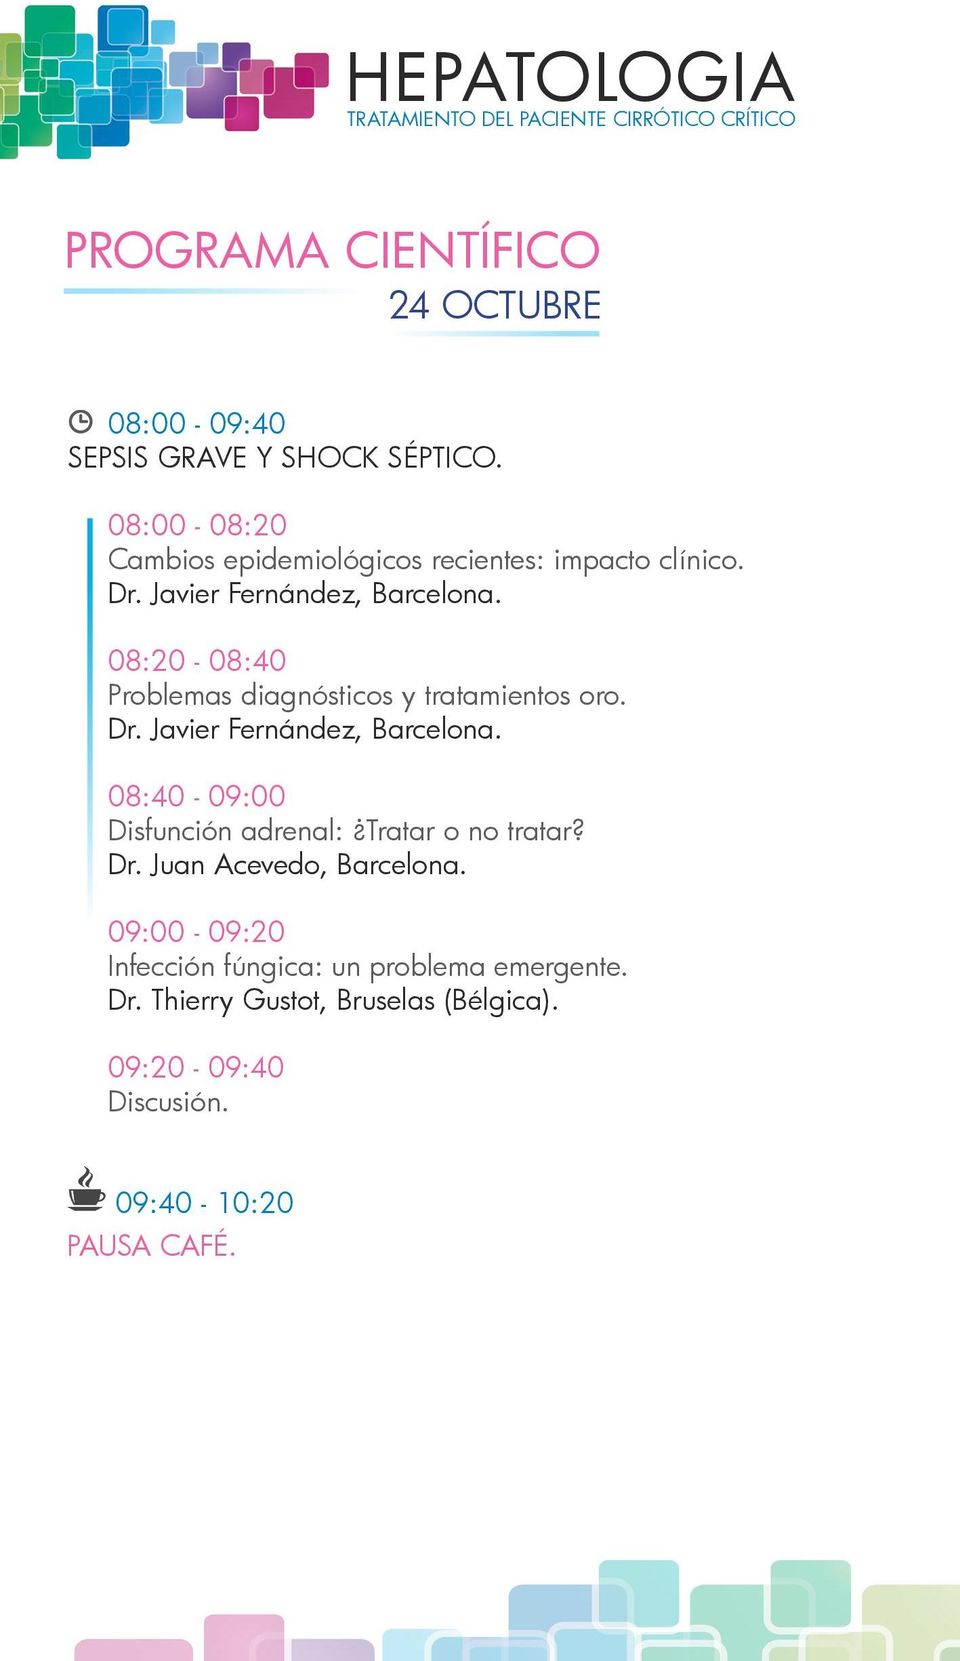 08:20-08:40 Problemas diagnósticos y tratamientos oro. Dr. Javier Fernández, Barcelona.